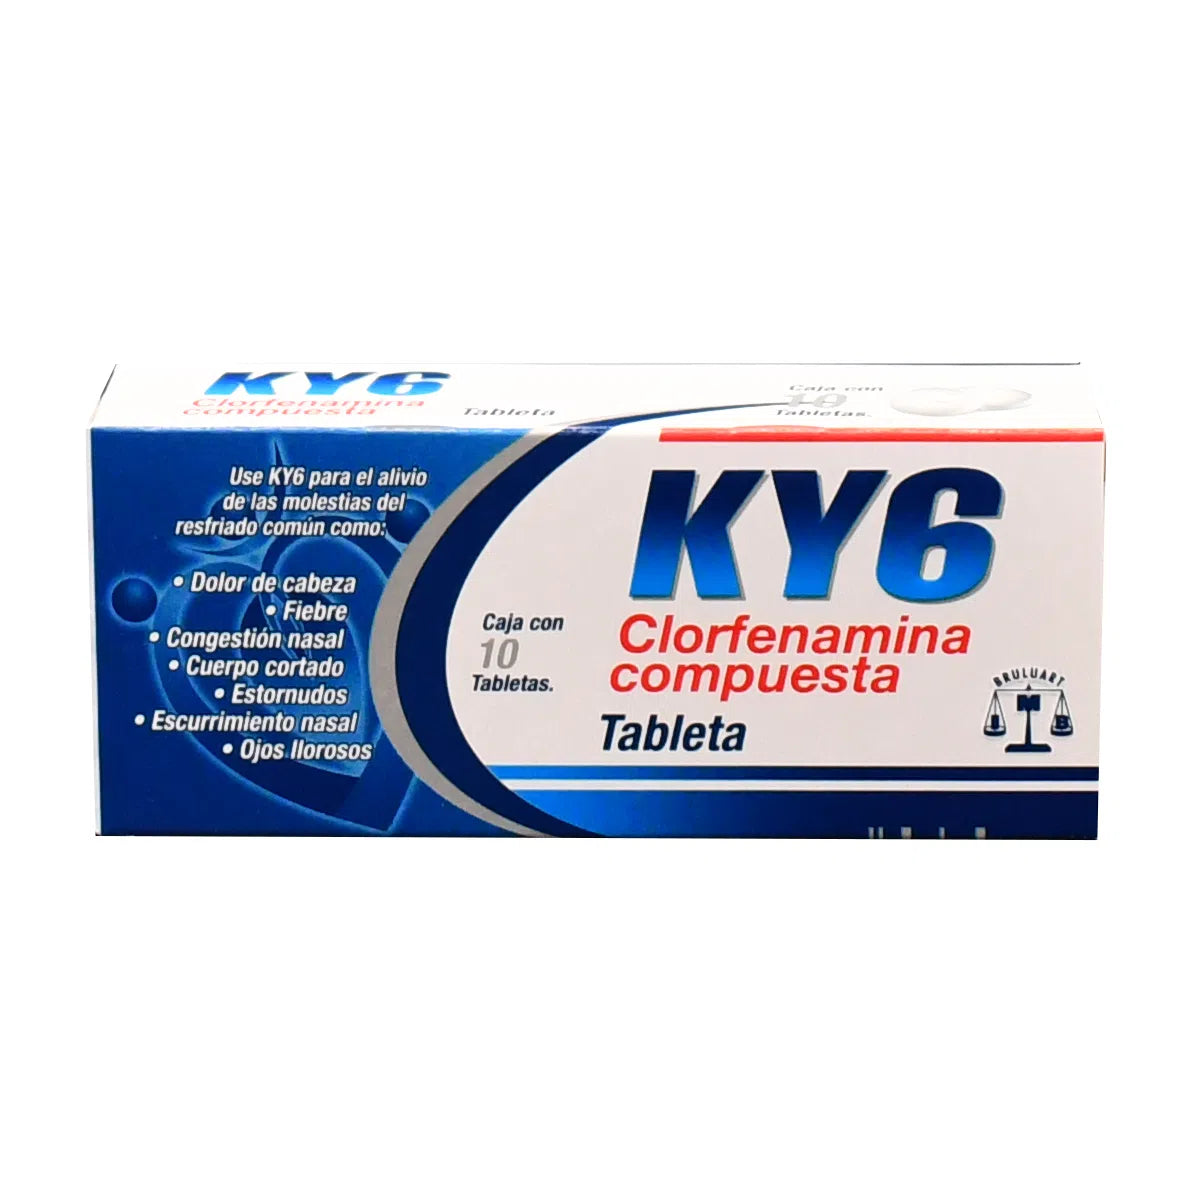 KY6 Clorfenamina Compuesta con 10 tabletas